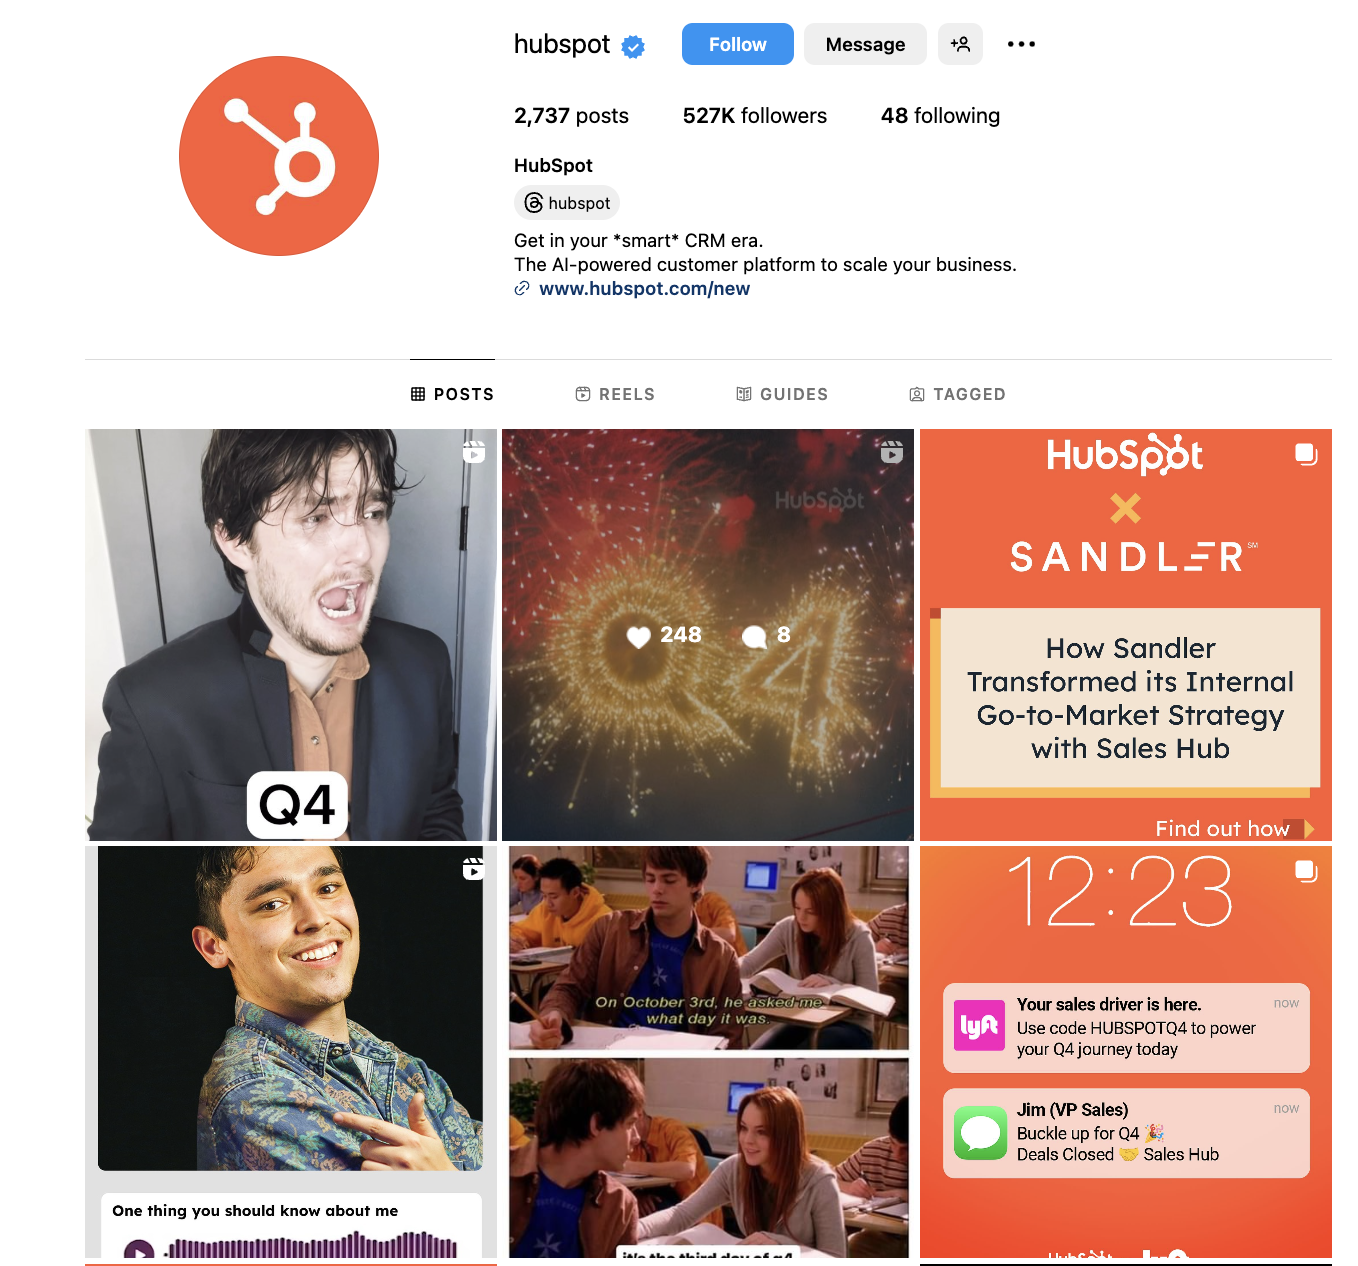 marketing types, digital marketing on HubSpot’s Instagram